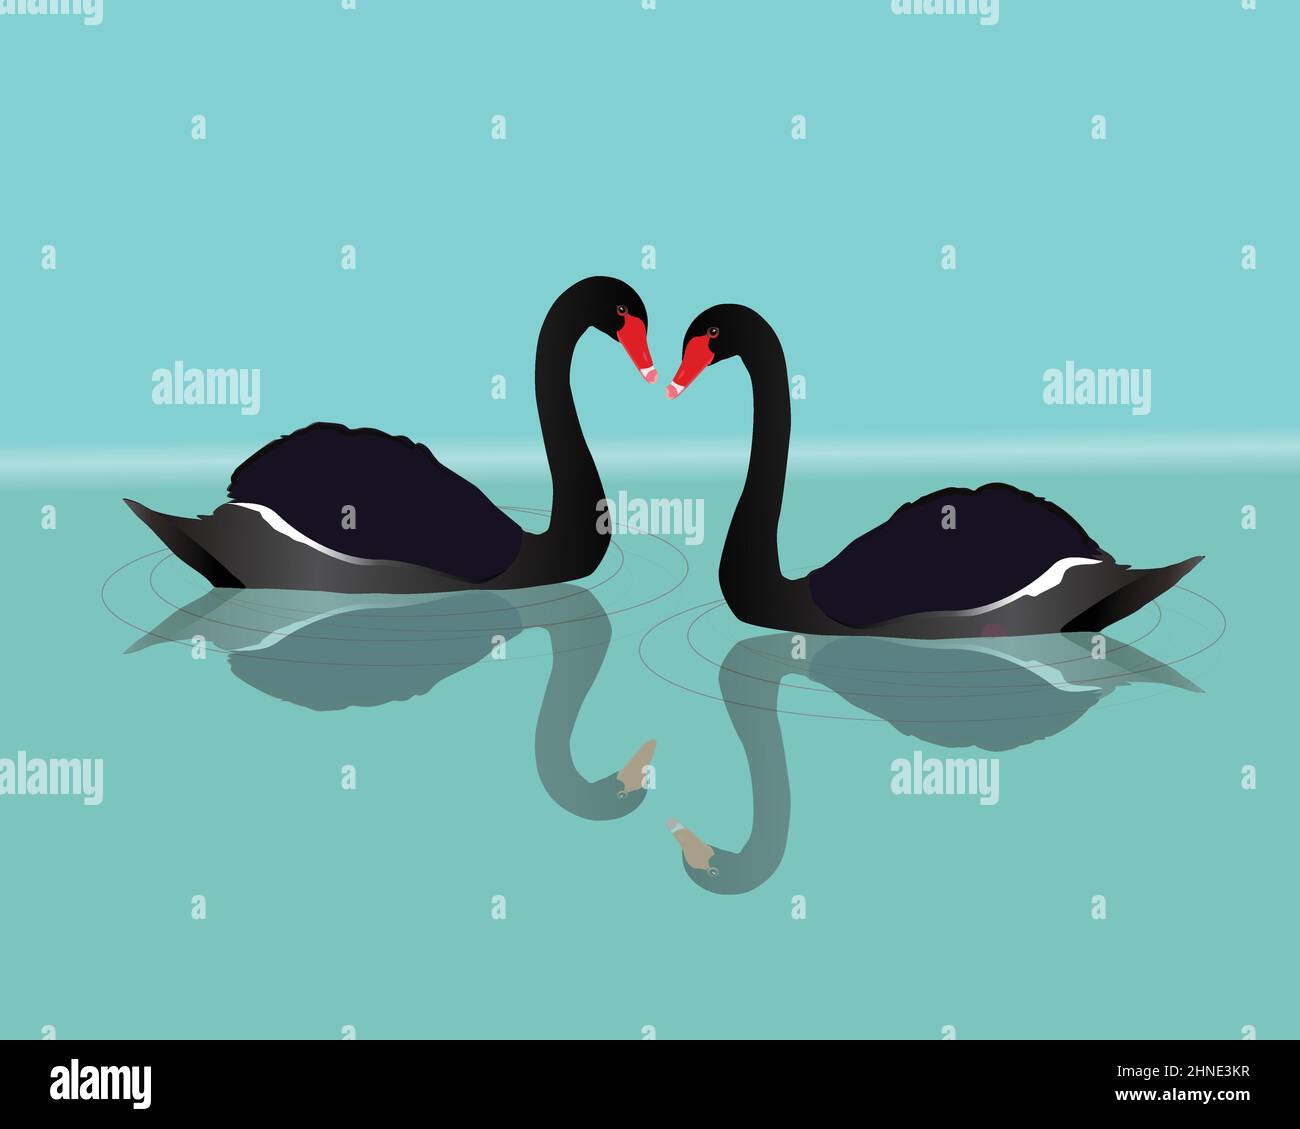 Eine Vektordarstellung von zwei schwarzen Schwanen, die im Wasser schwimmen. Sie können die Spiegelung der großen schwarzen Vögel im Wasser sehen. Kurven werden angezeigt Stock Vektor